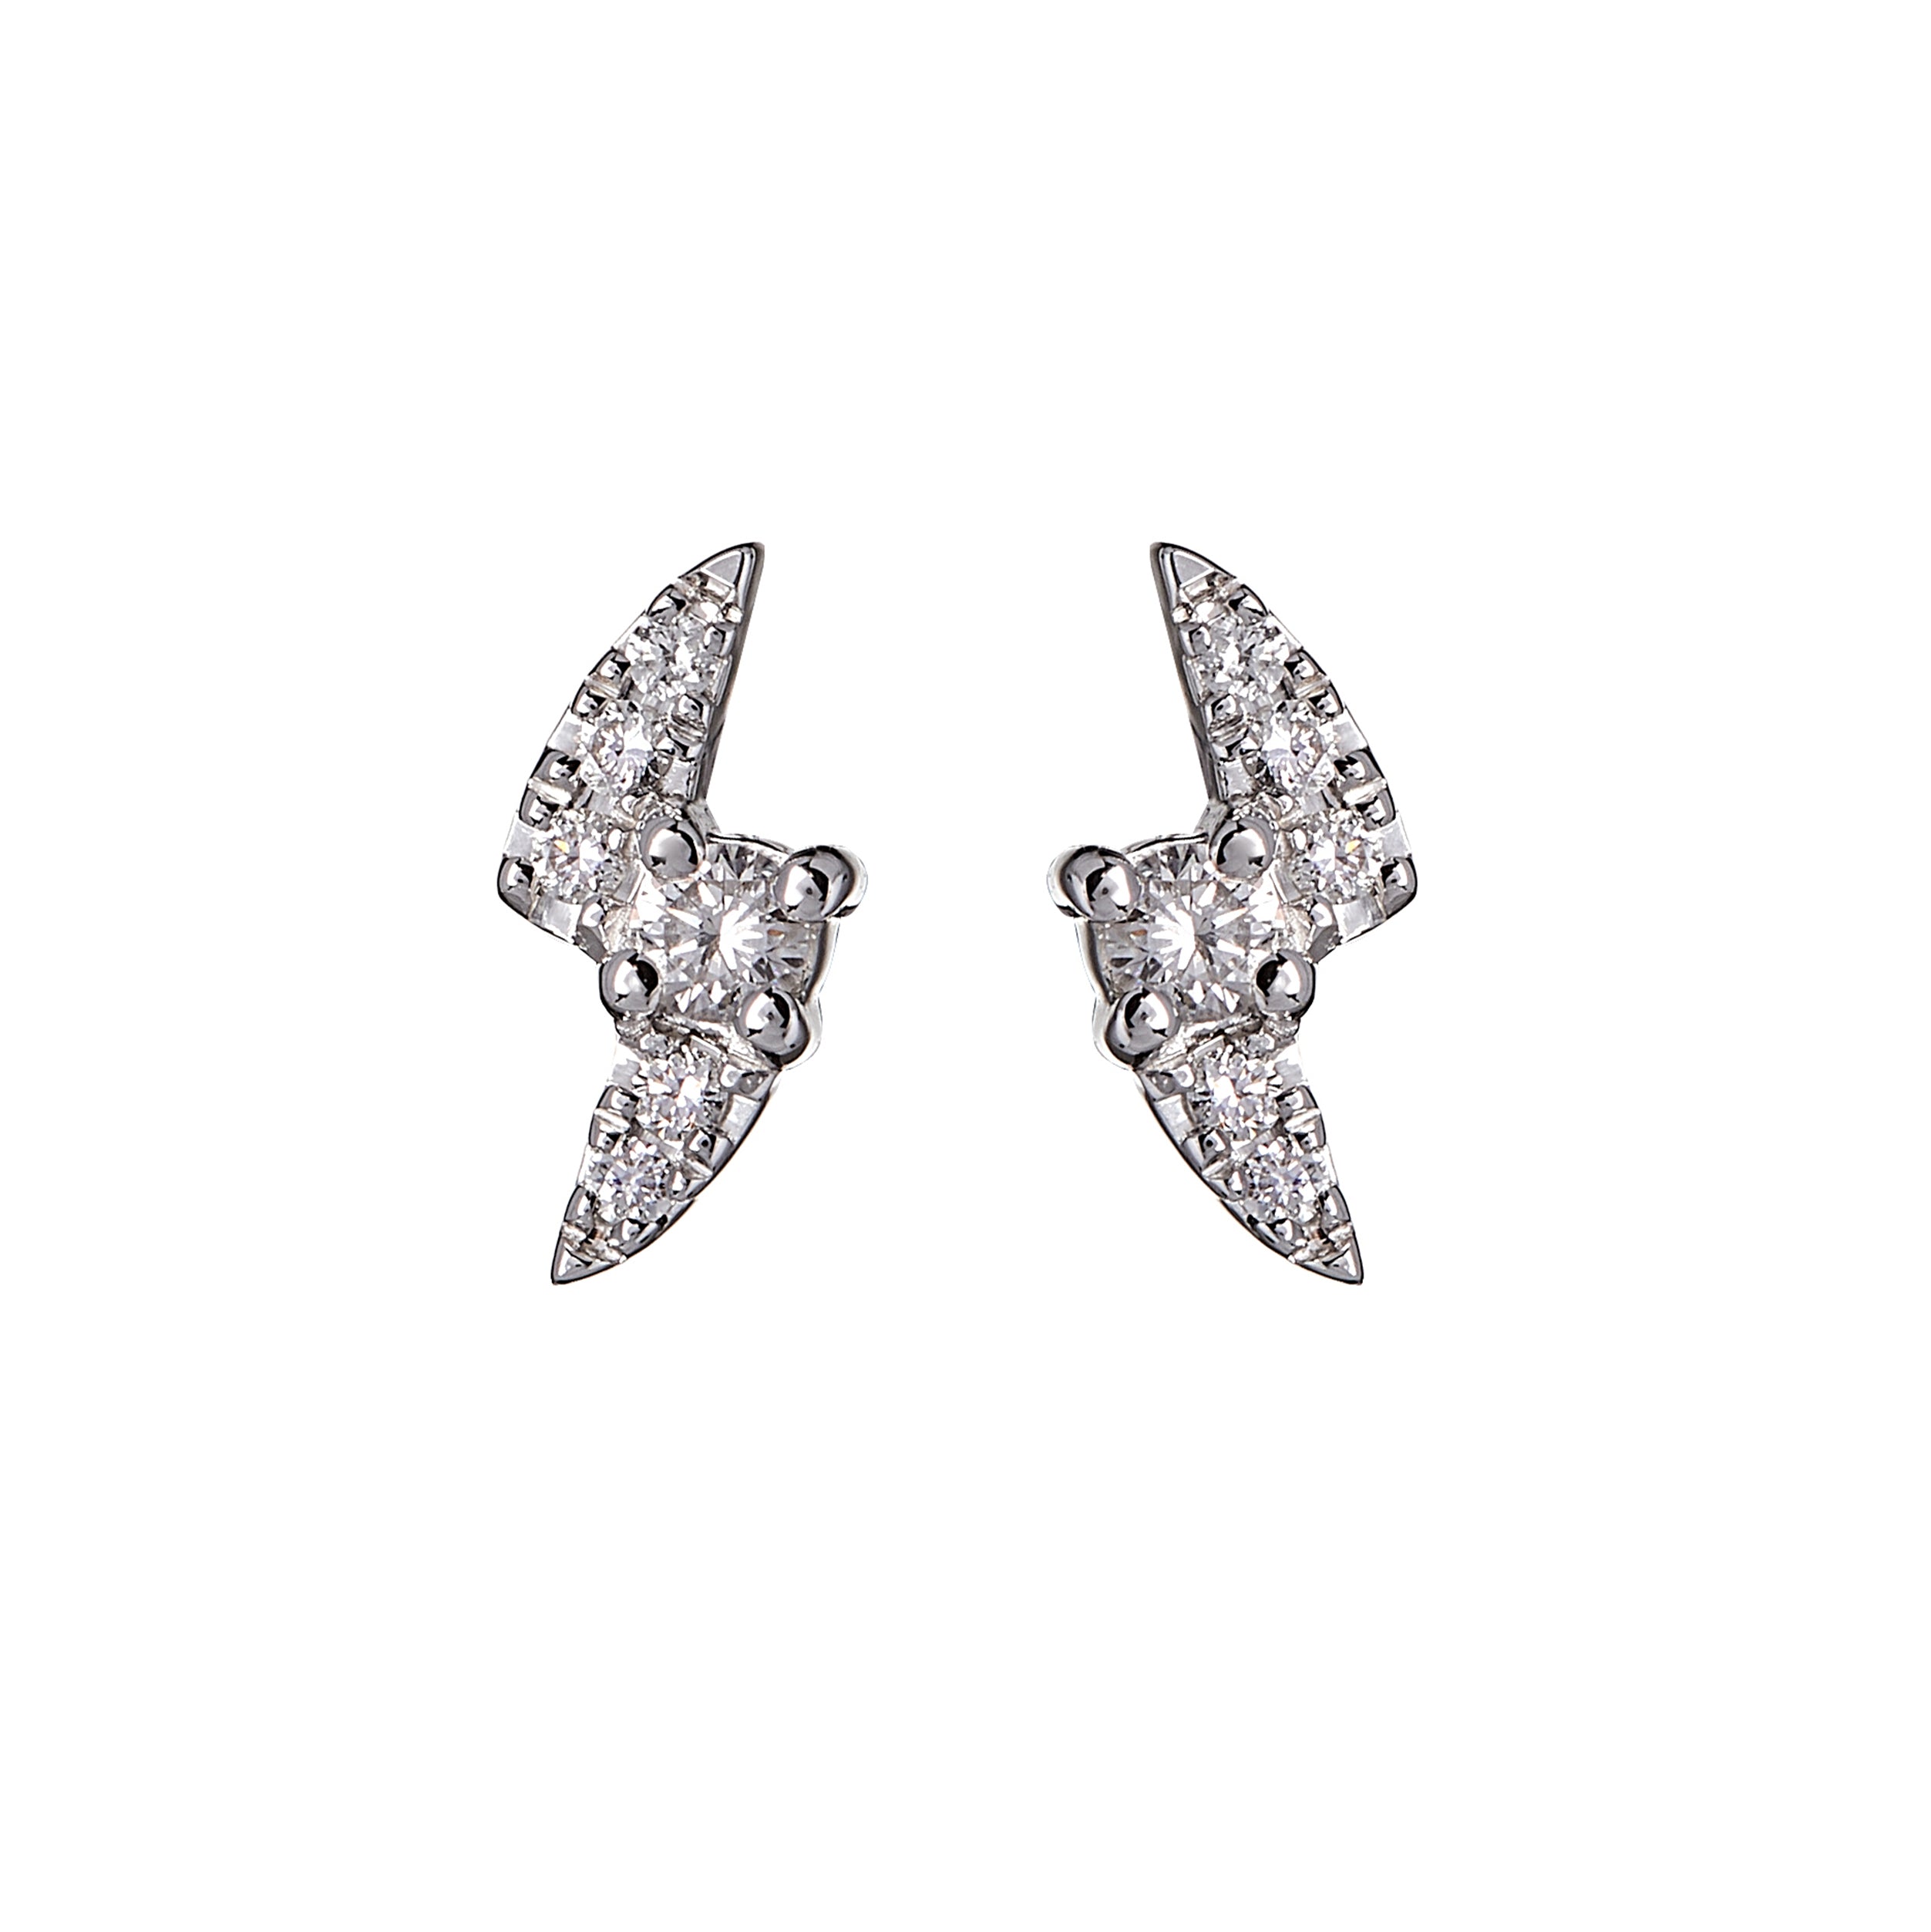 9ct White Gold Diamond Pavé-Set Lightning Bolt Stud Earrings